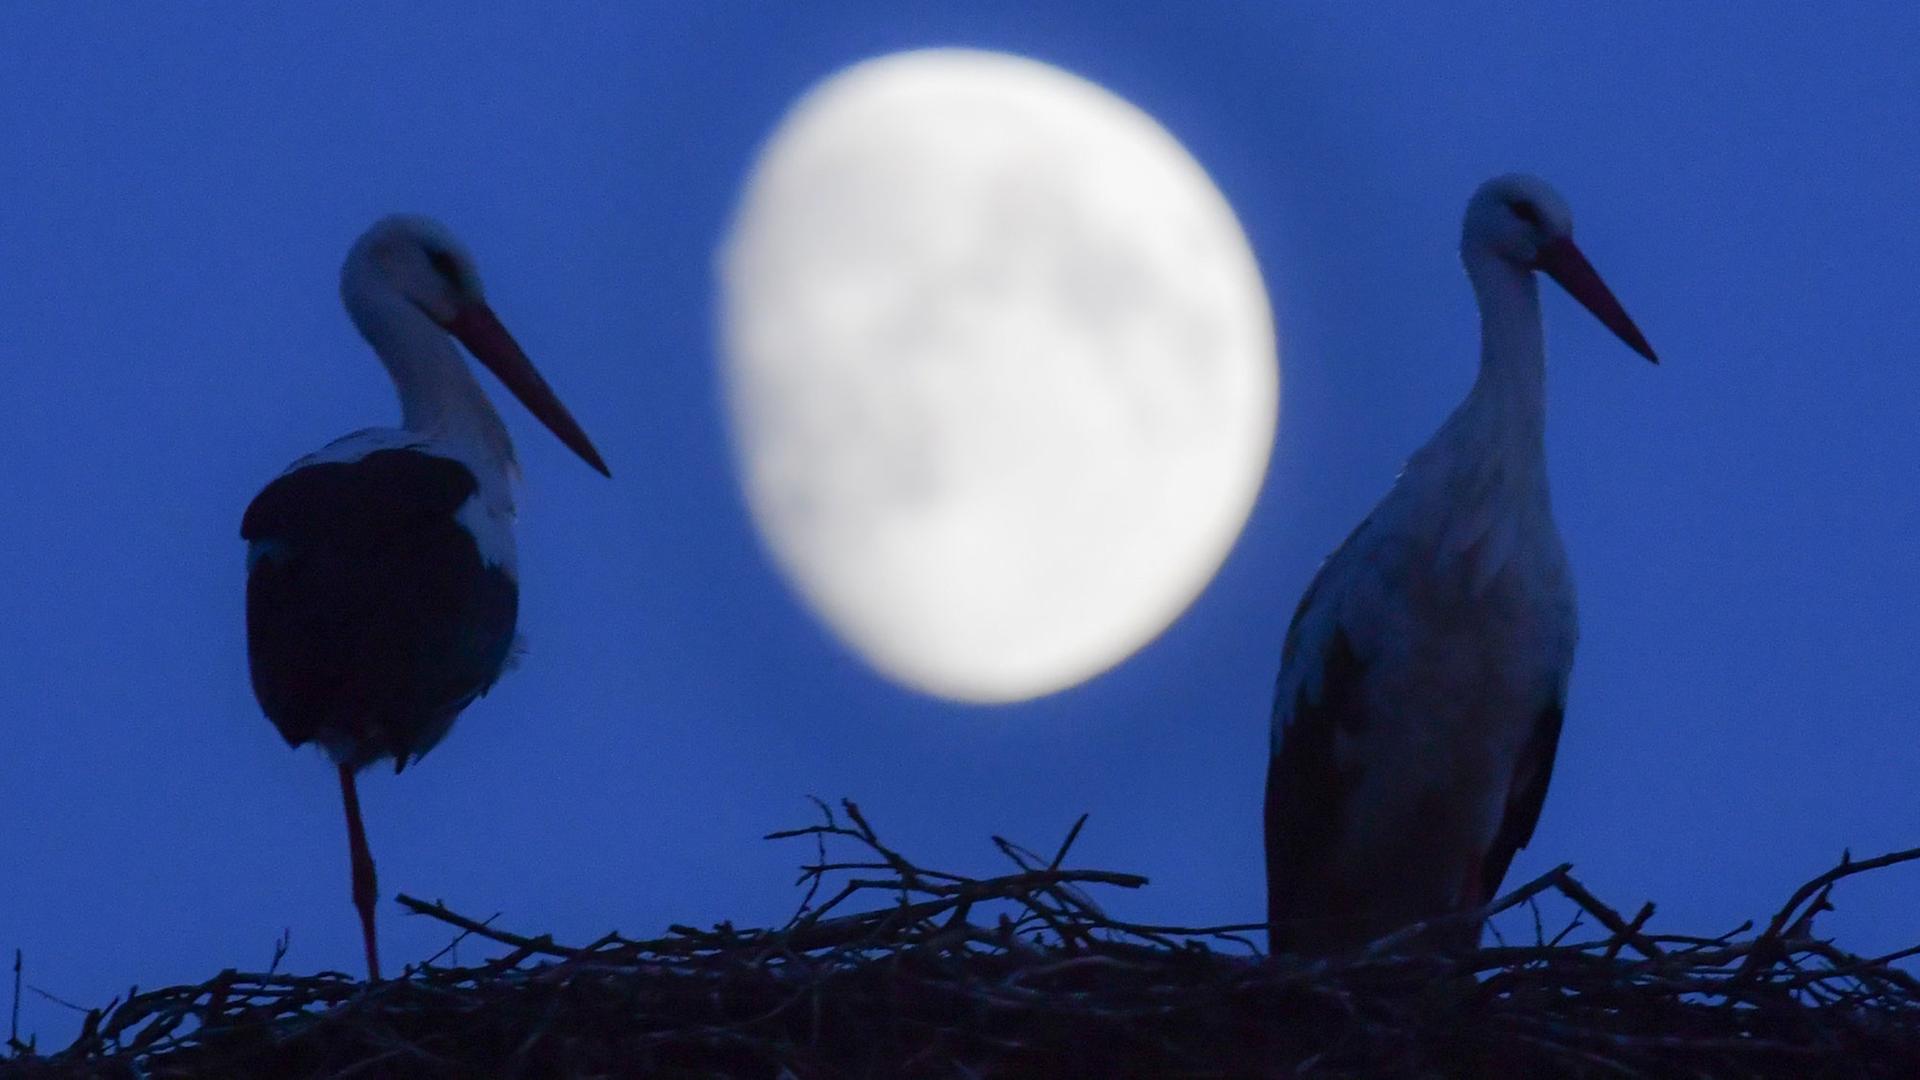 Ein Weißstorchpaar steht in seinem Nest, während im Hintergrund der zunehmende Mond am Nachthimmel zu sehen ist.